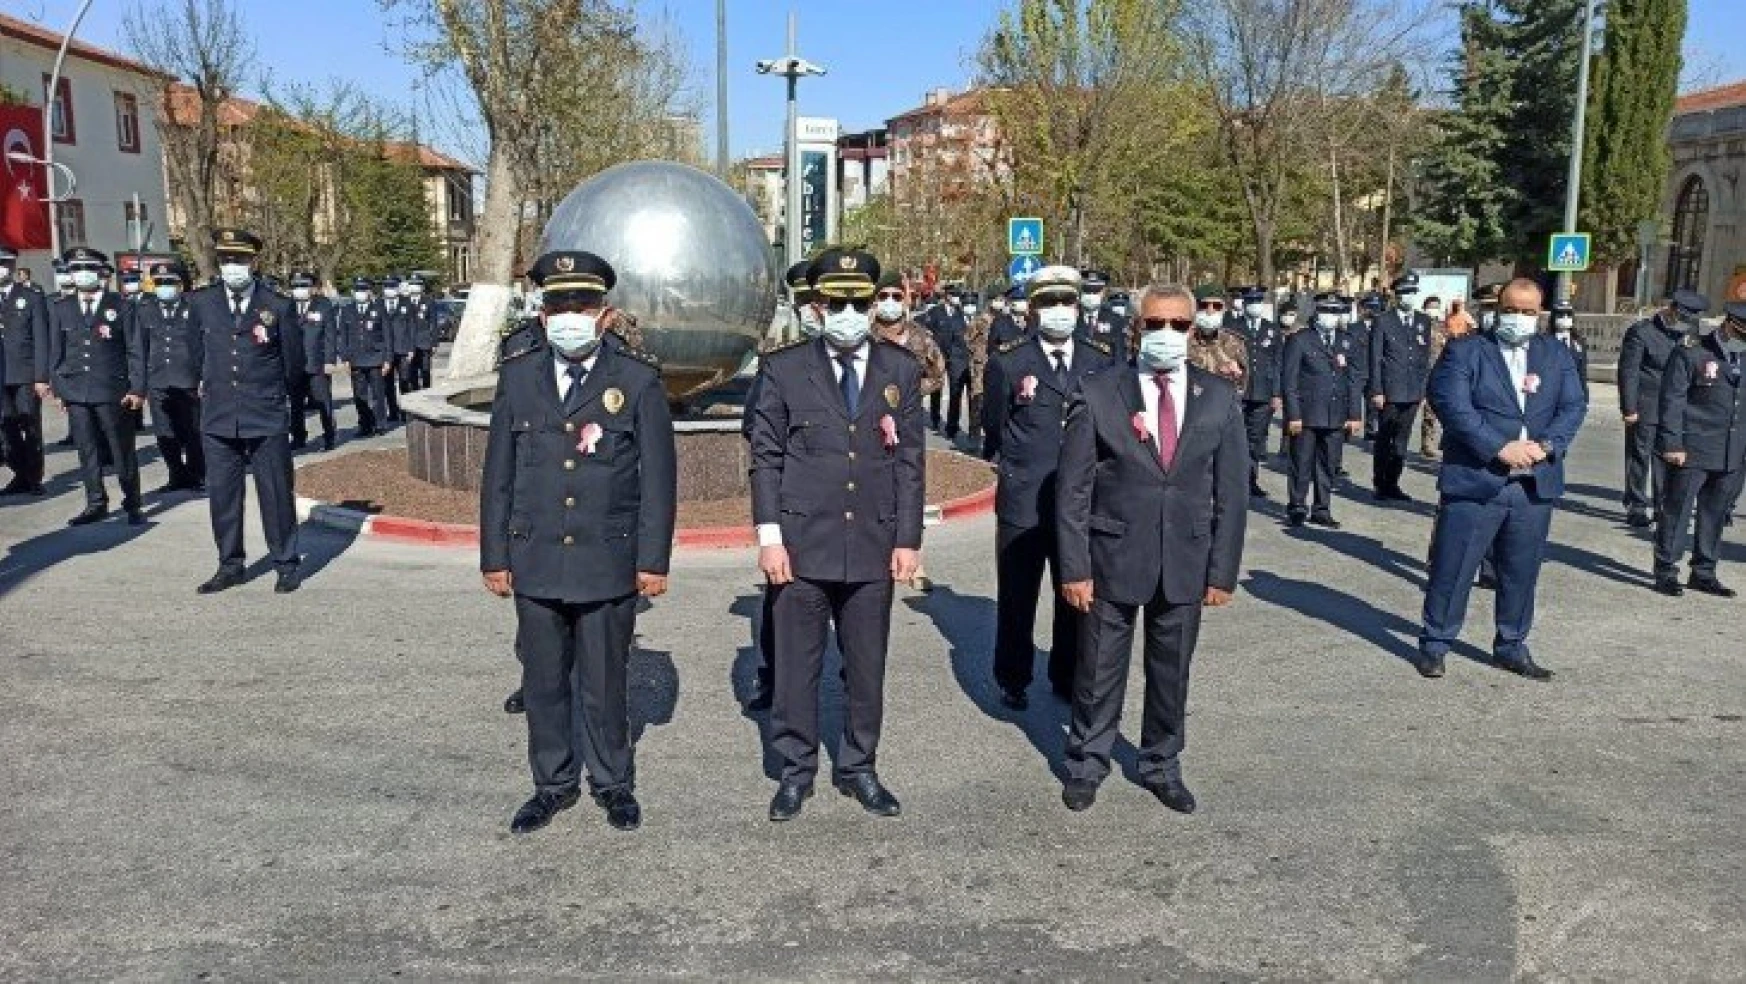 Malatya'da polis teşkilatının 176. yılı kutlandı